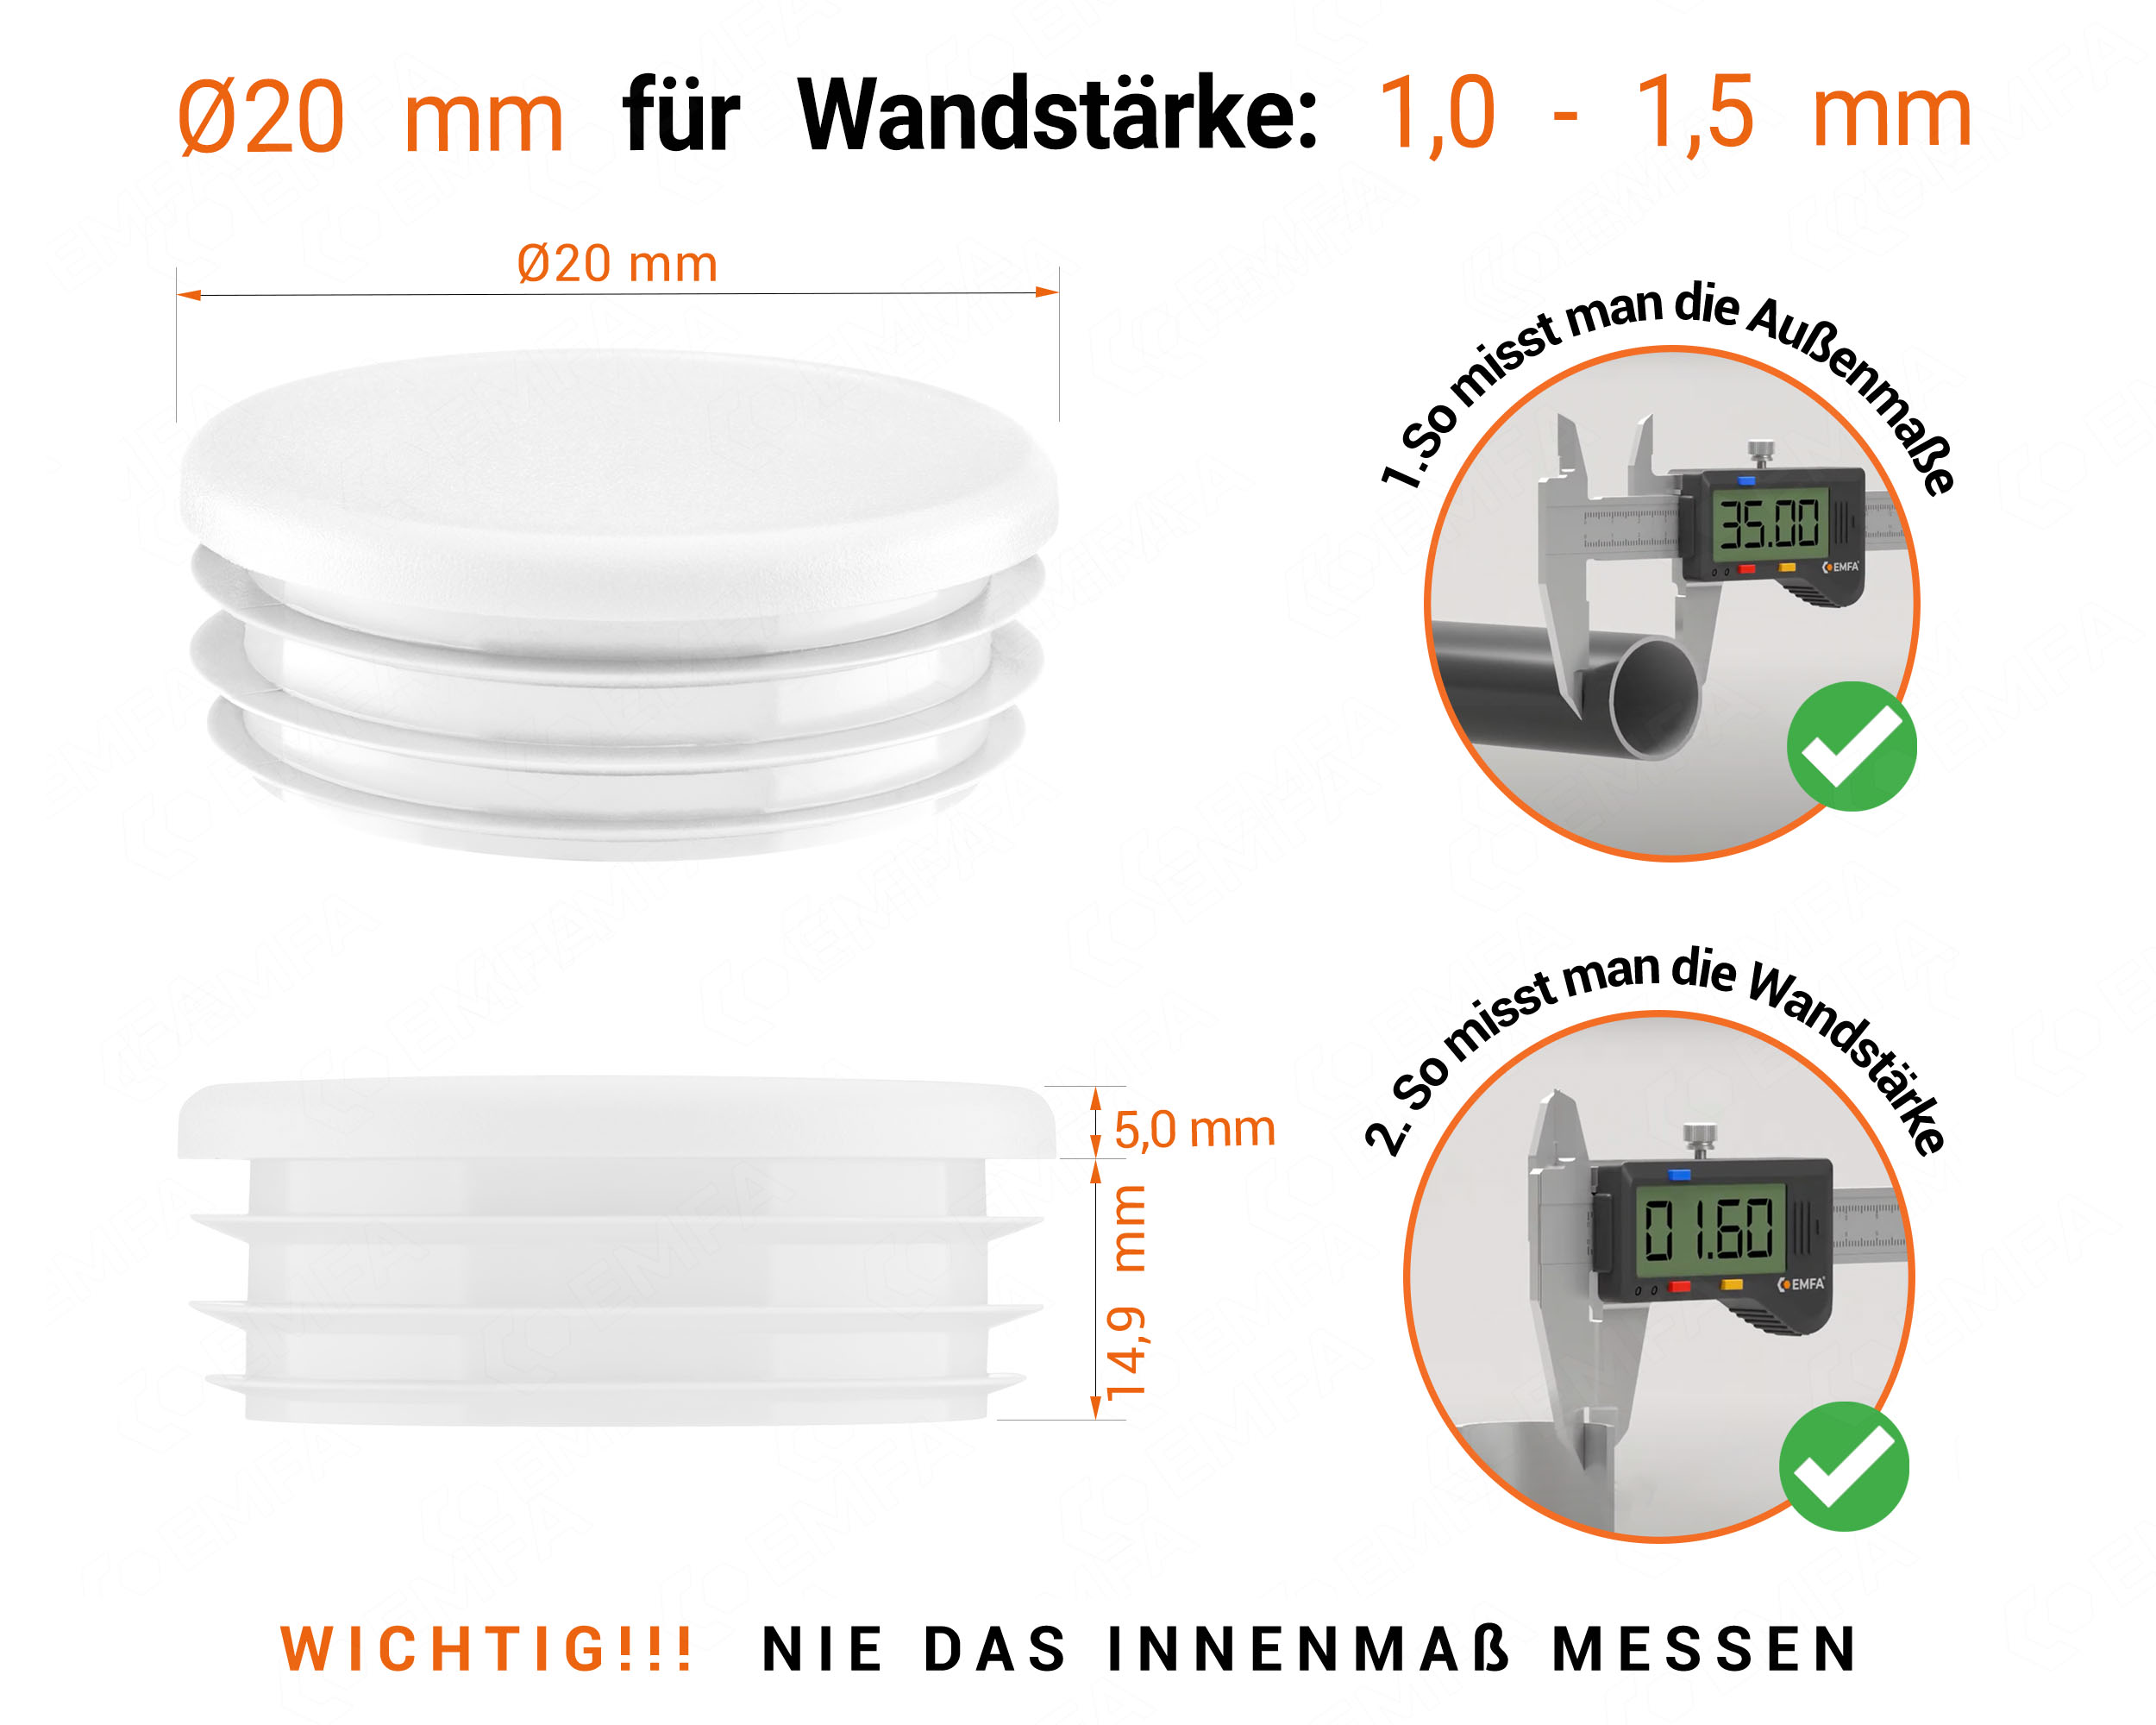 Weiße Endkappe für Rundrohre in der Größe 20 mm mit technischen Abmessungen und Anleitung für korrekte Messung